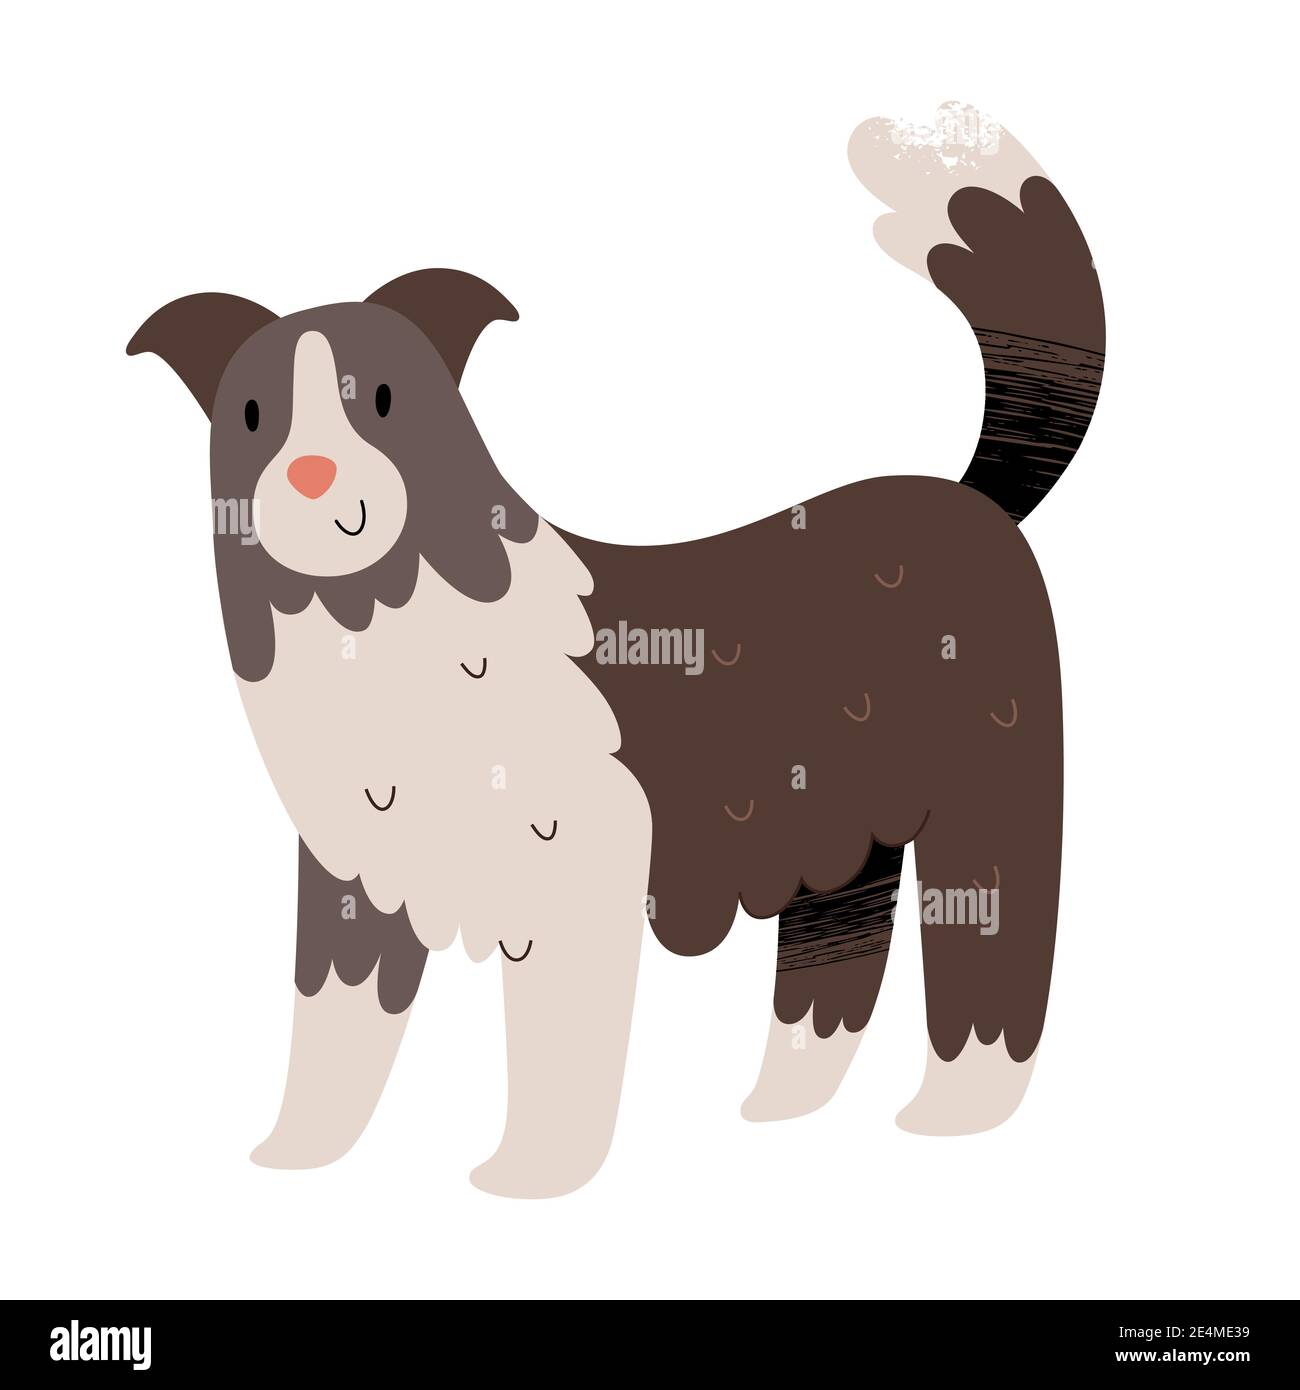 Jolie bordure collie illustration, chien de berger ou berger, clipart vecteur isolé Illustration de Vecteur